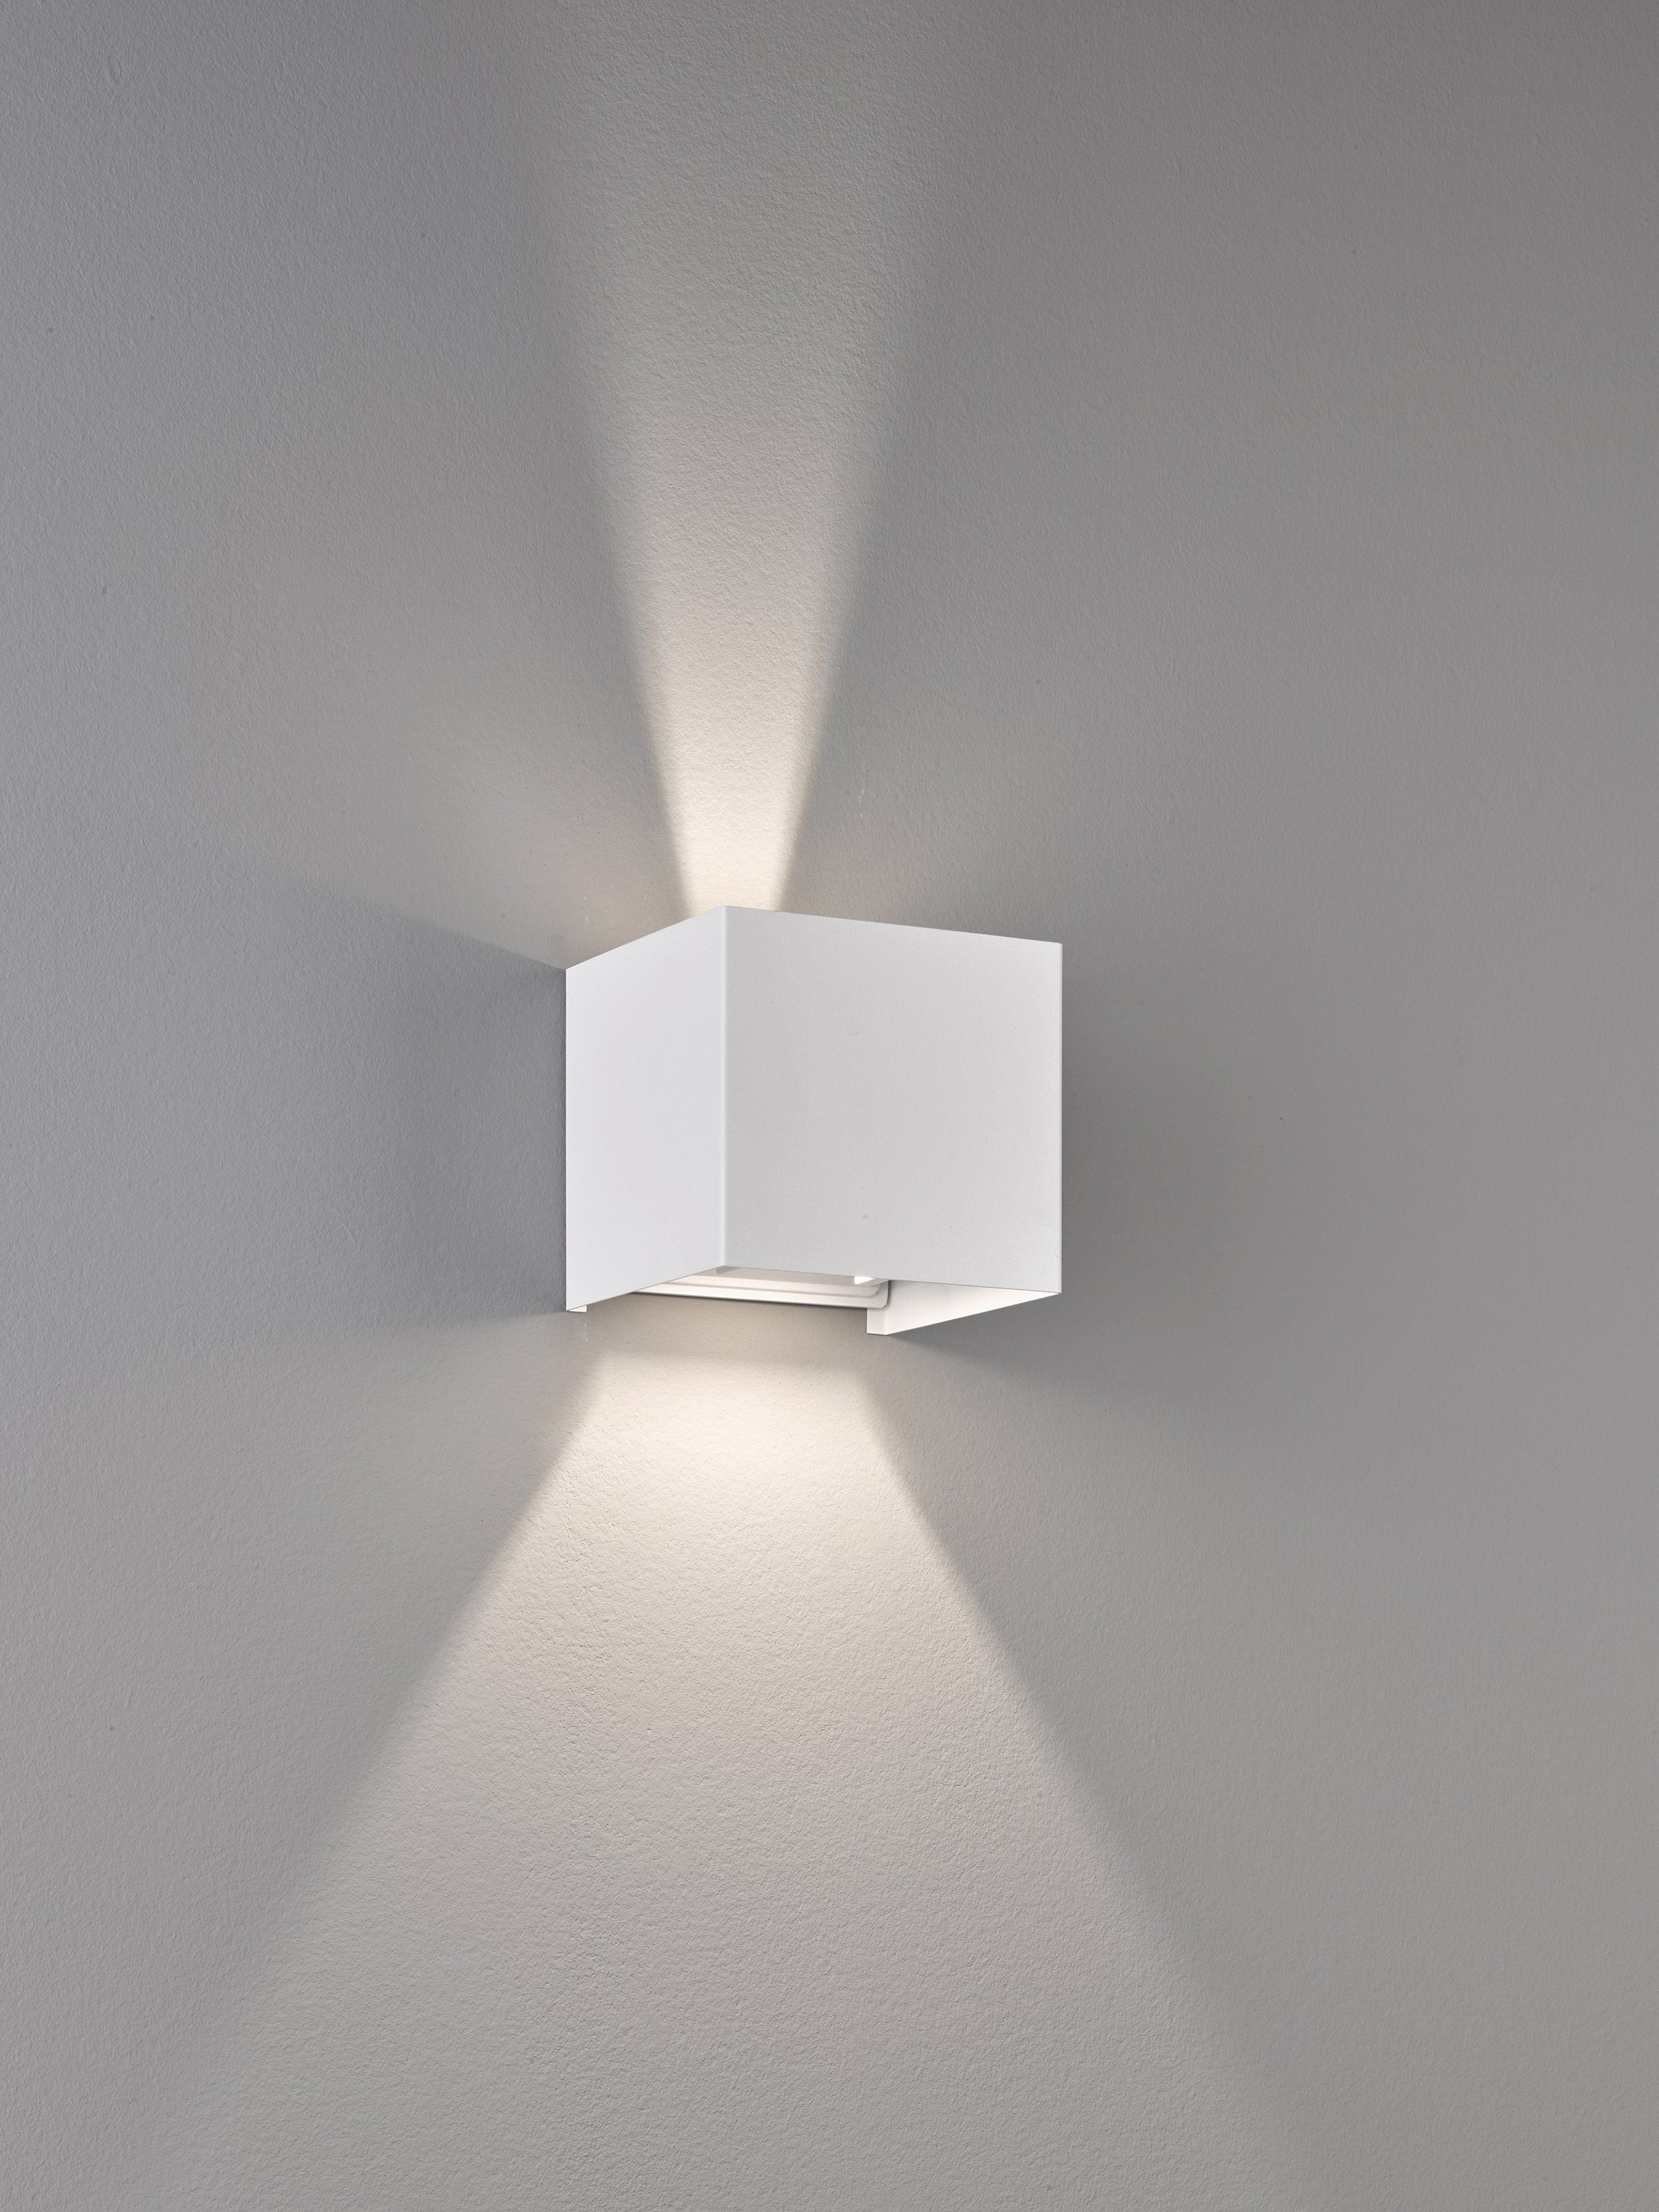 & integriert, fest Wandleuchte LED Wall, Ein-/Ausschalter, Warmweiß FISCHER LED HONSEL